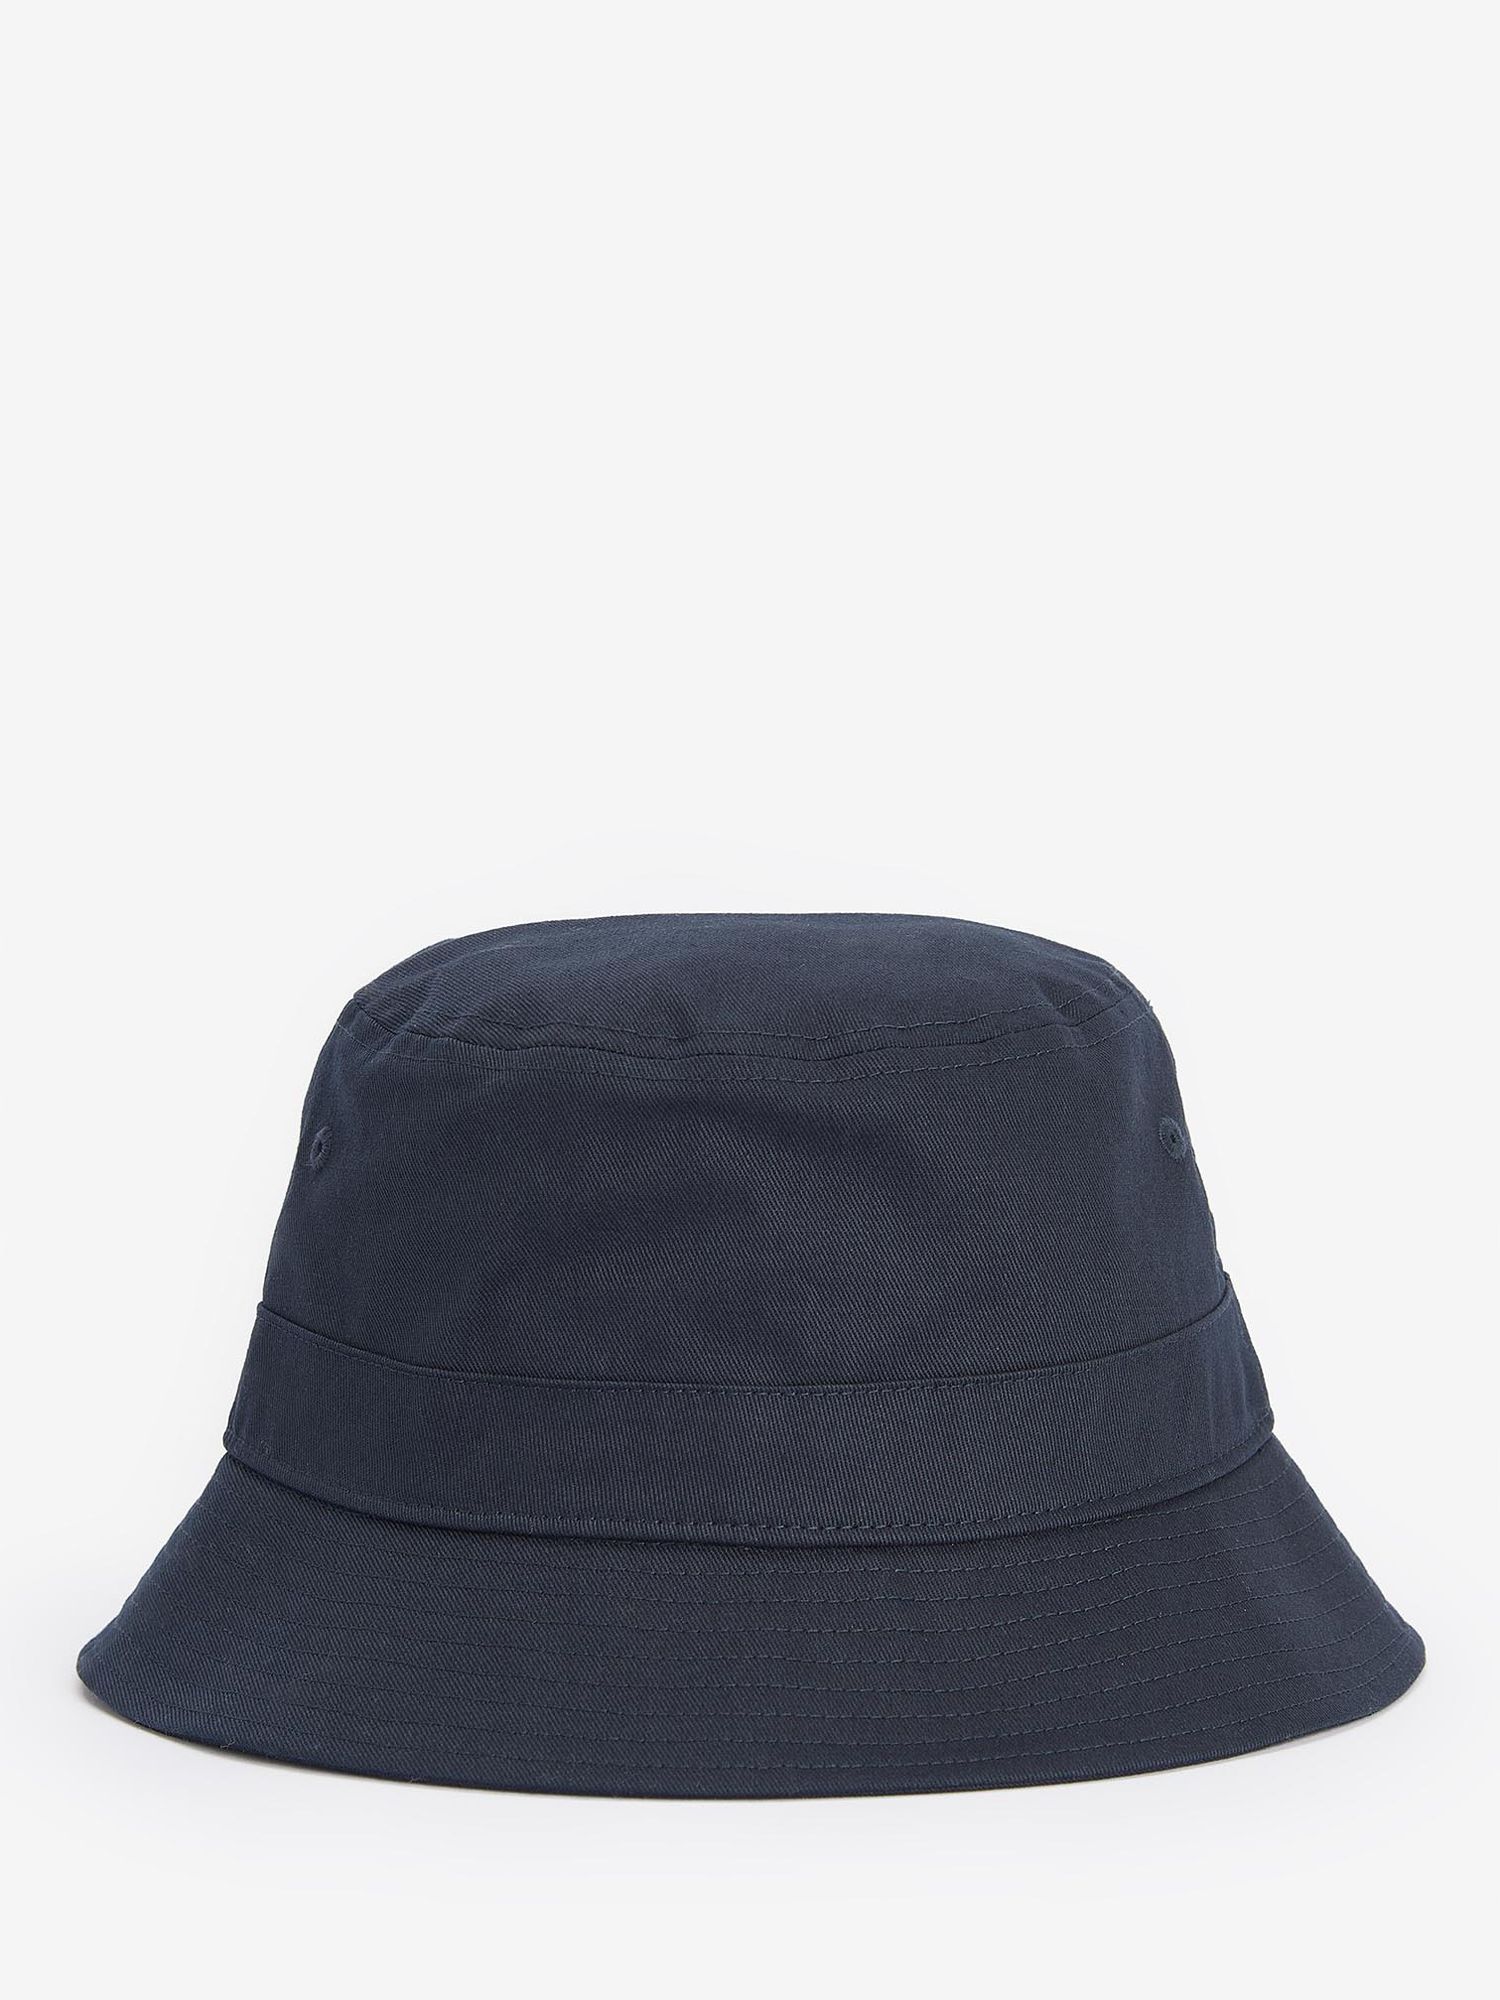 Barbour Olivia Cotton Bucket Hat, Navy, M